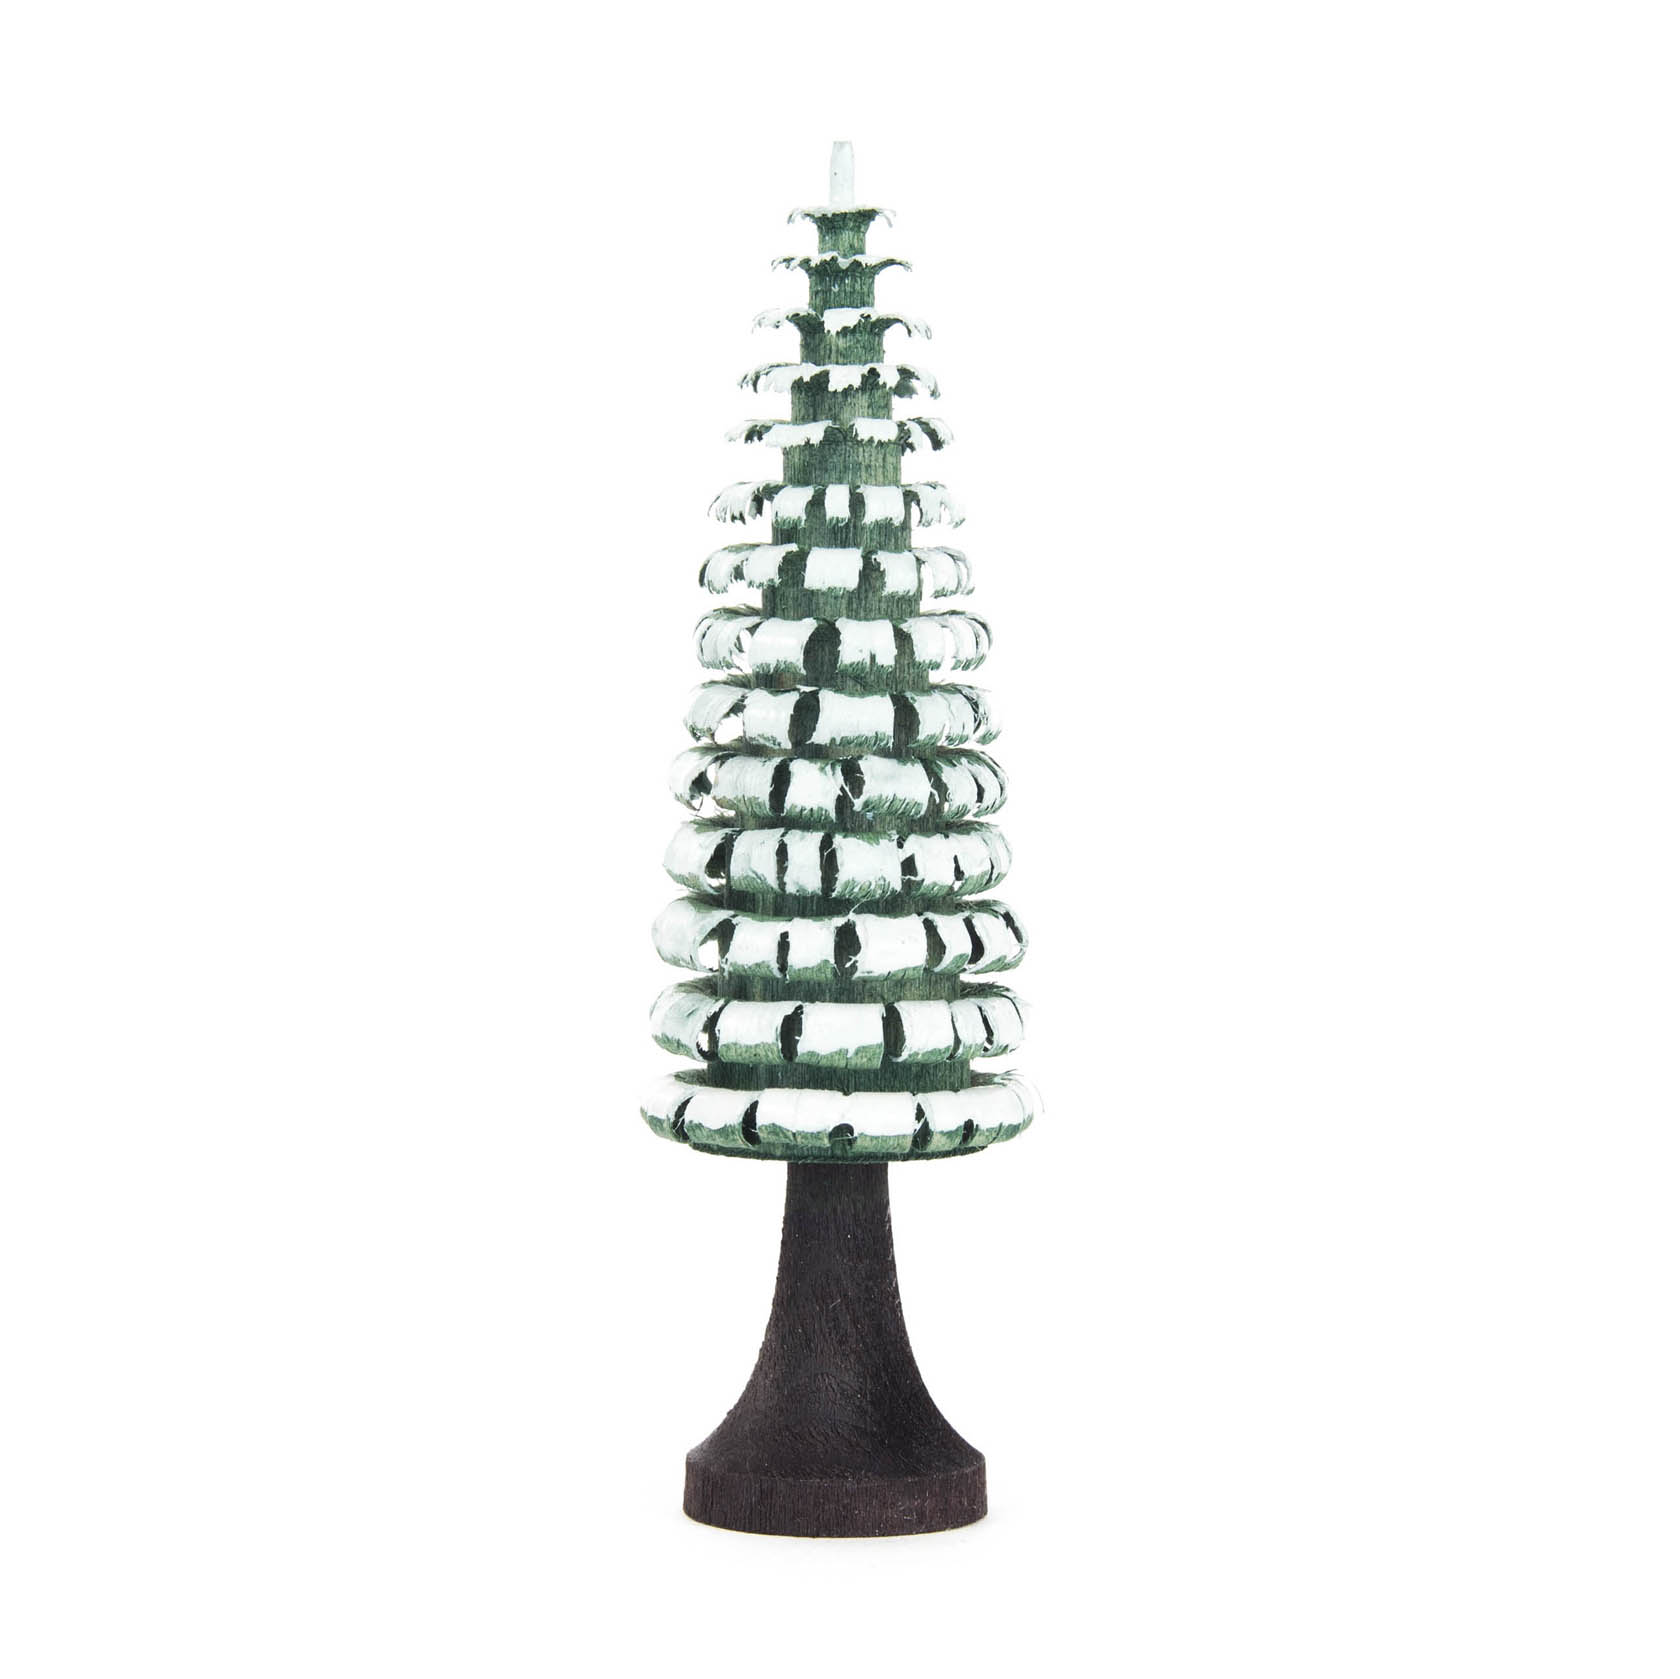 Ringelbaum 8cm mit Stamm grün/weiß im Dregeno Online Shop günstig kaufen